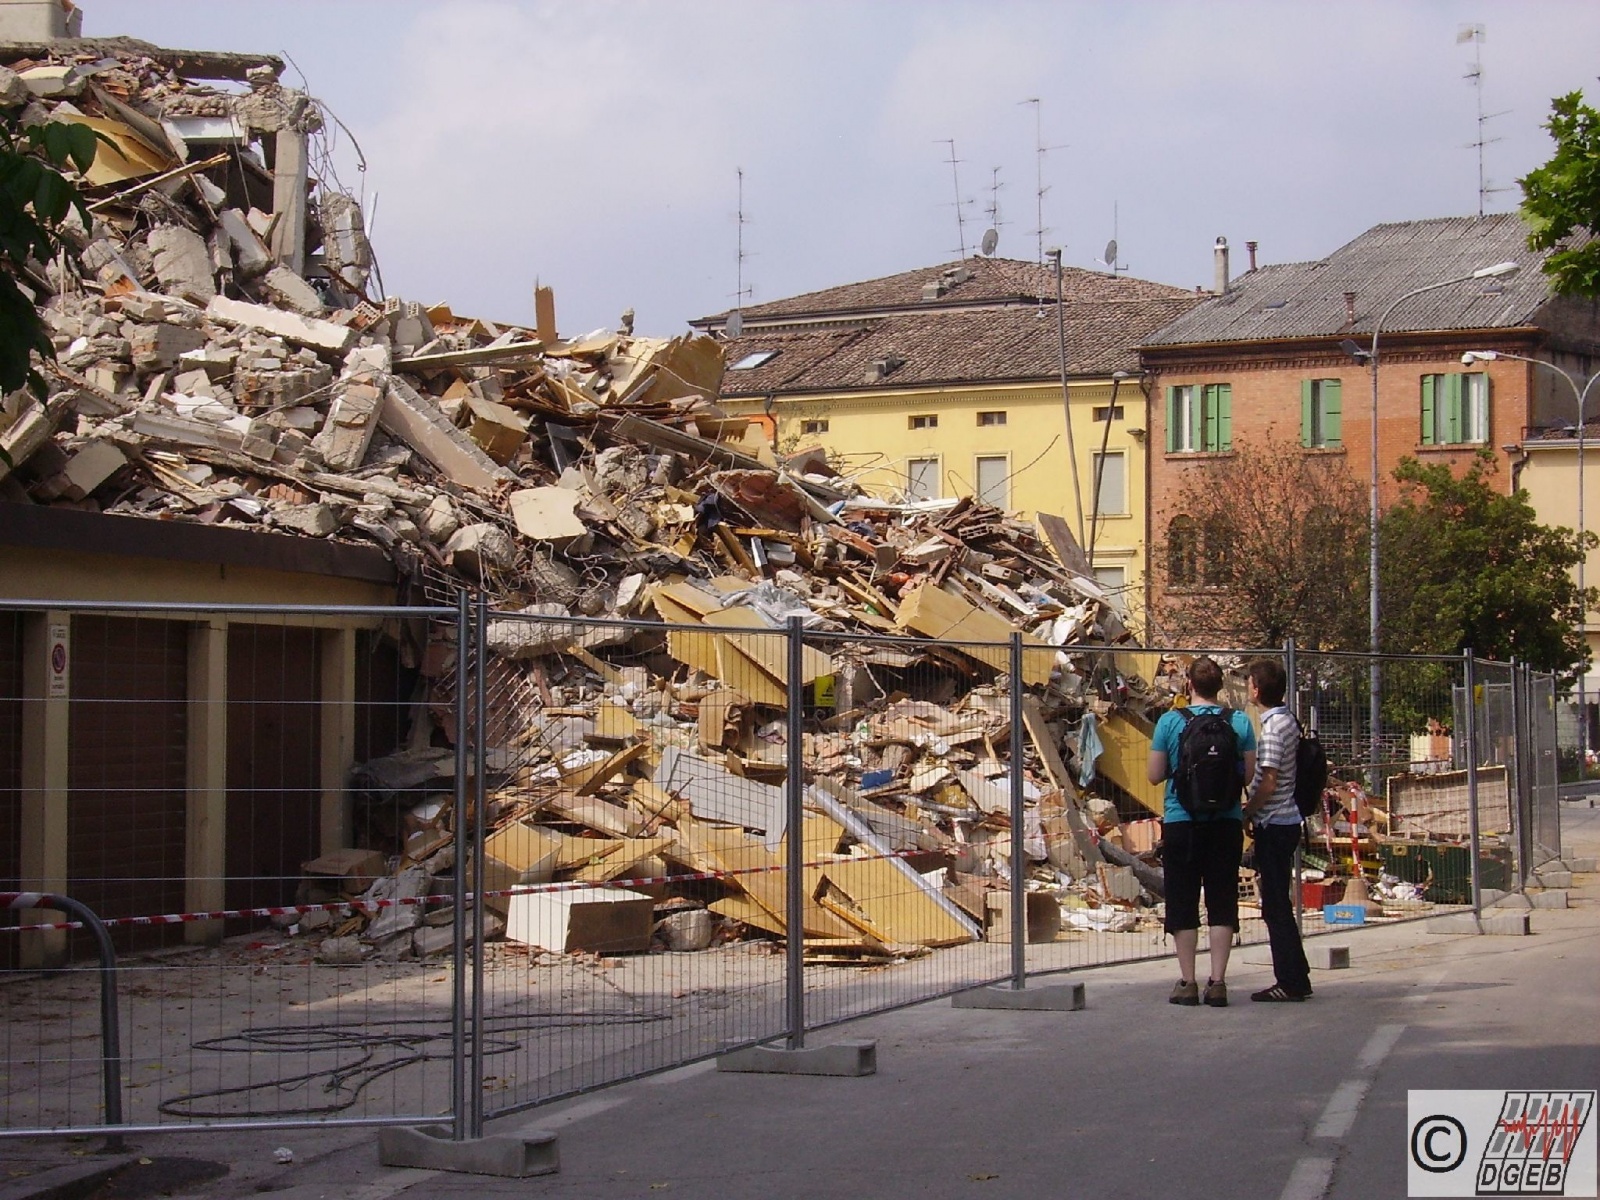 DGEB-Erkundungsreise, Erdbebenschäden in der Emilia Romagna, Juni 2012